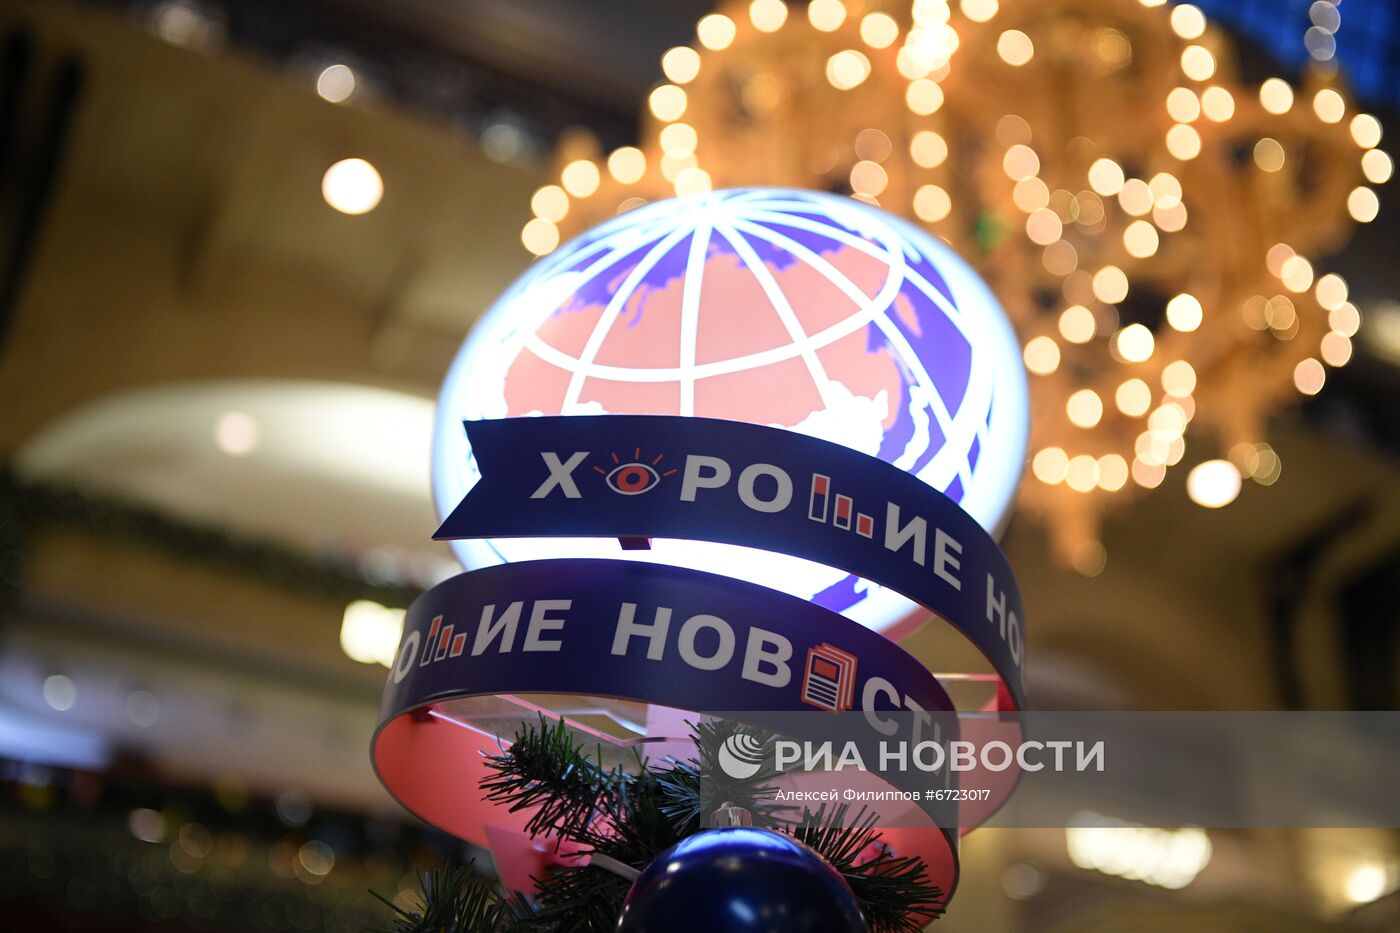 Новогодняя елка агентства "Россия сегодня" в ГУМе